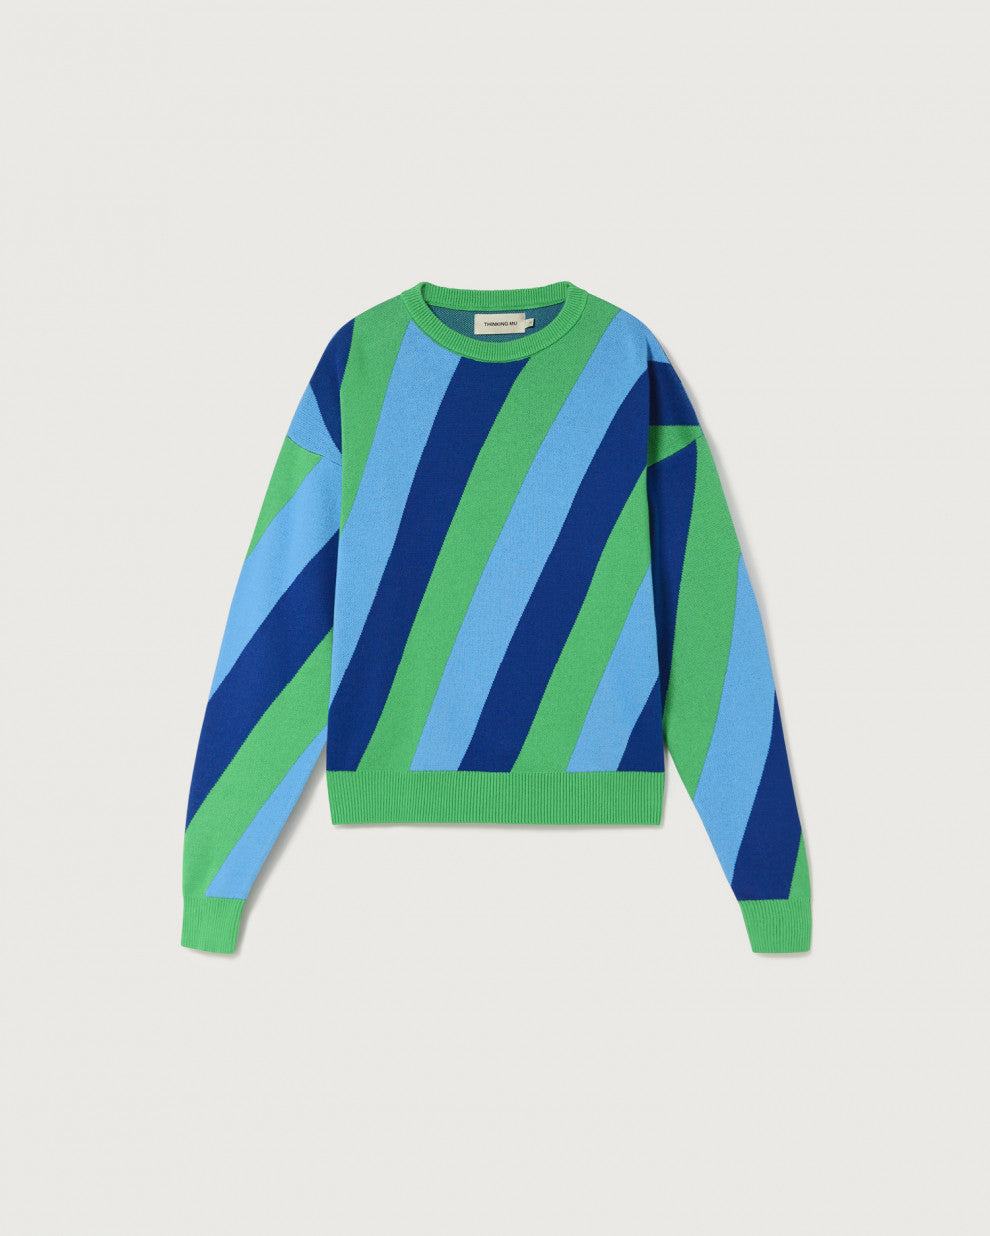 Paloma Navy Striped Sweatshirt - Thinking Mu